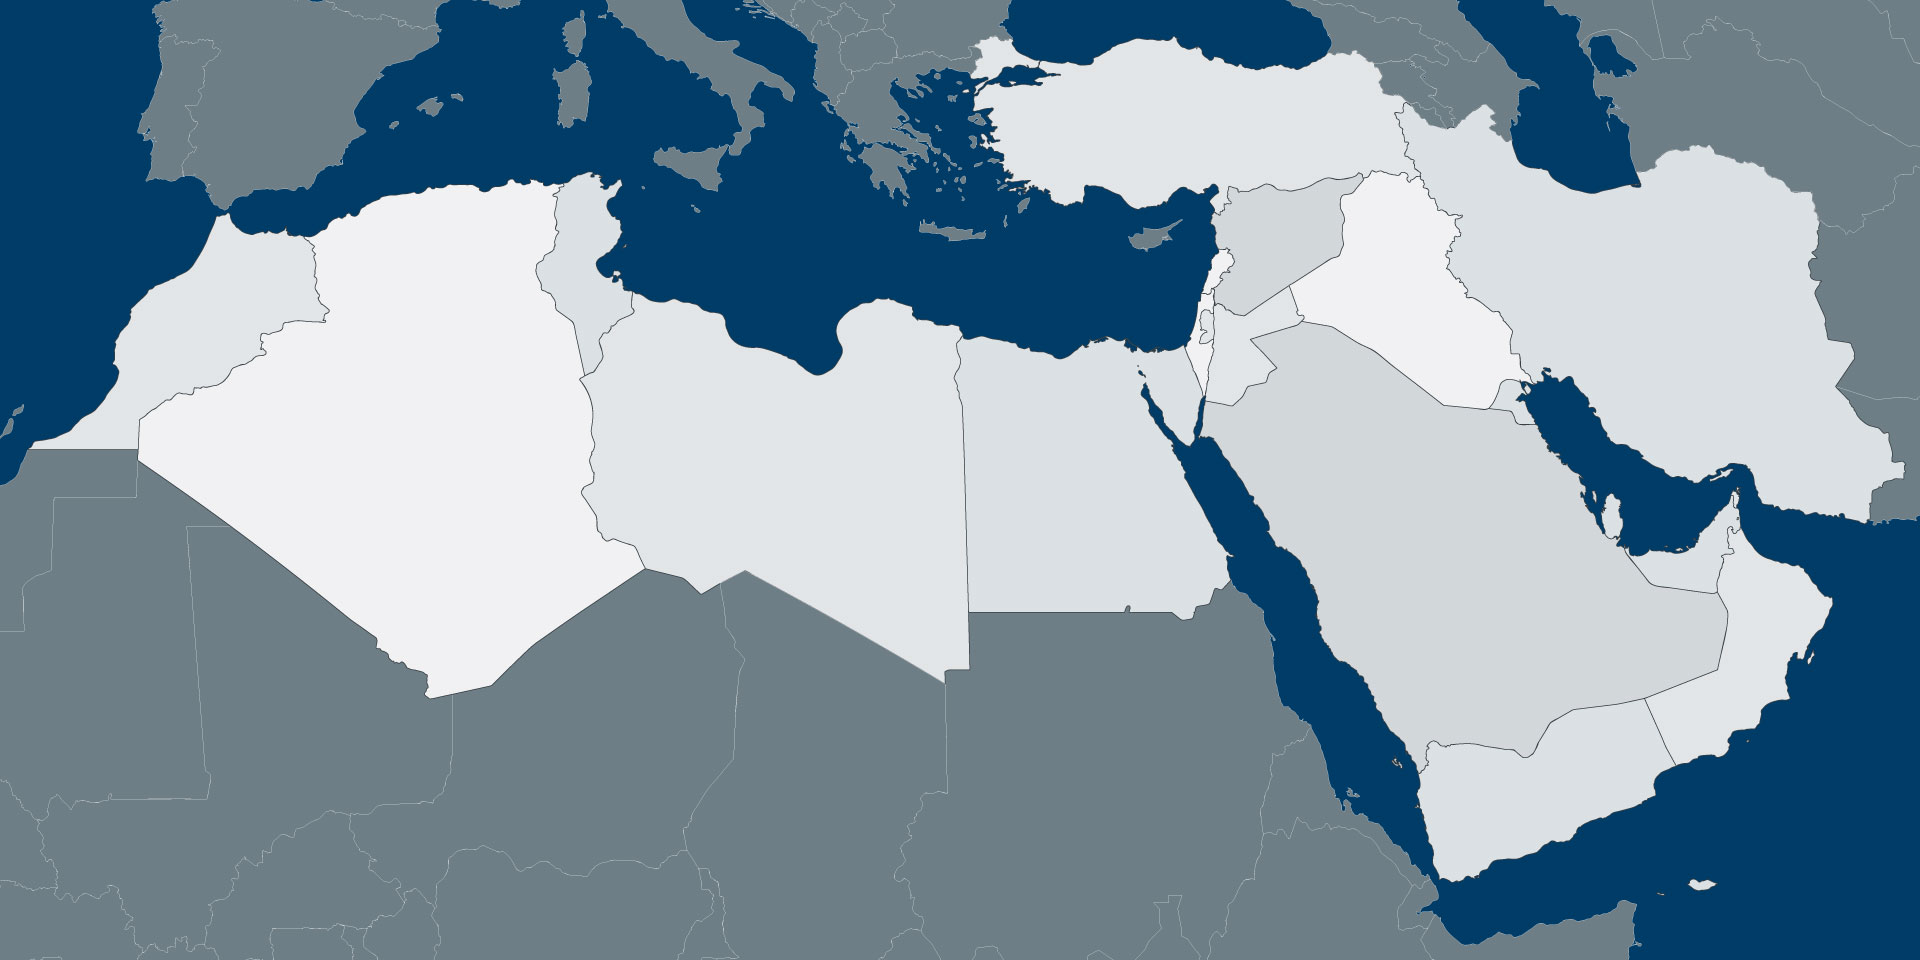 وجهات نظر عربية حول مشكلة الهجرة في أوروبا